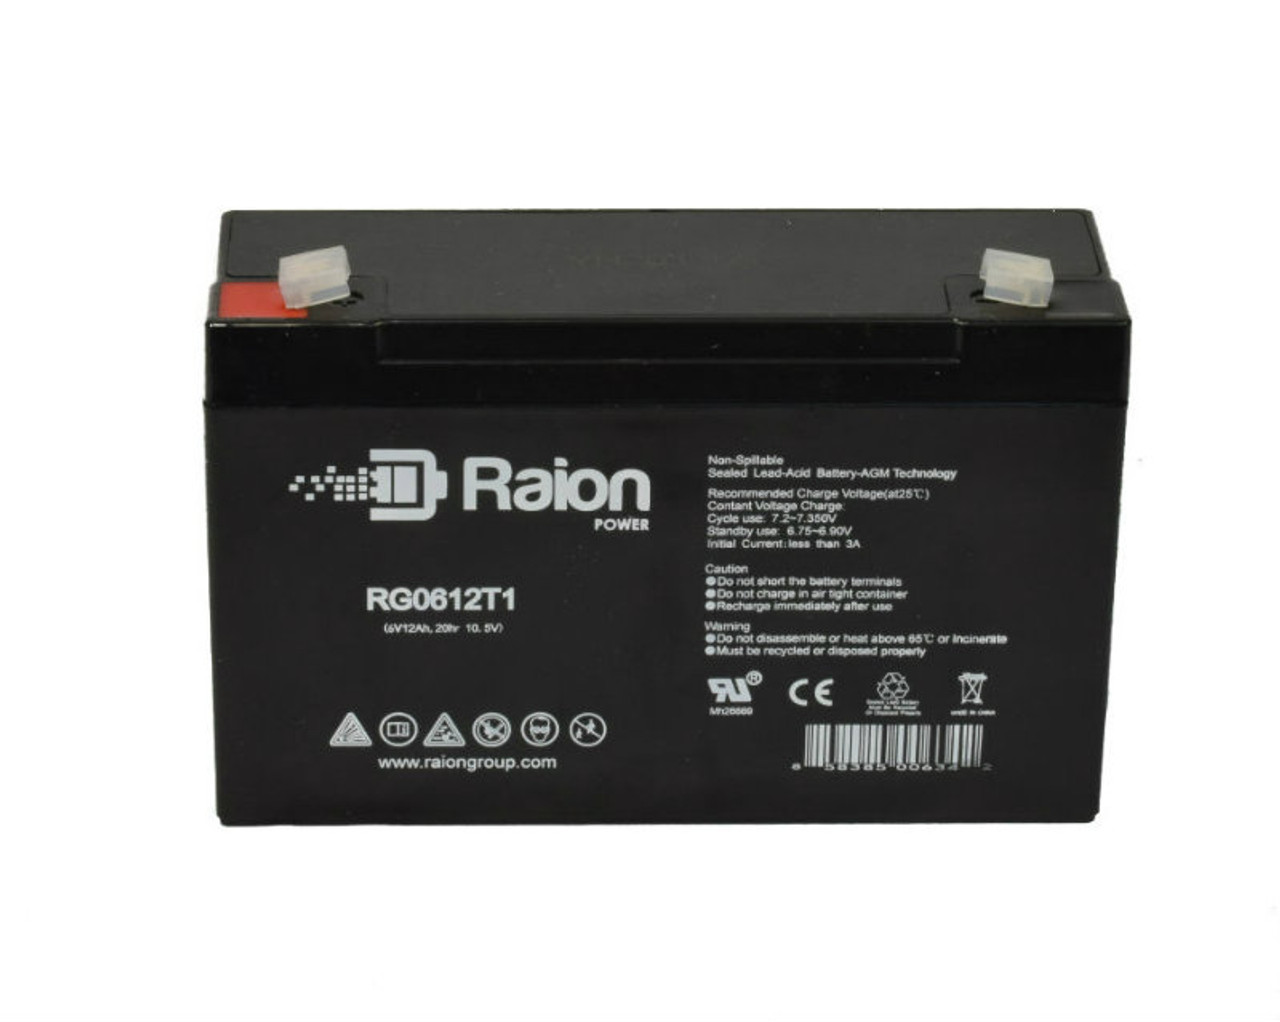 Raion Power RG06120T1 SLA Battery for Sonnenschein Q9